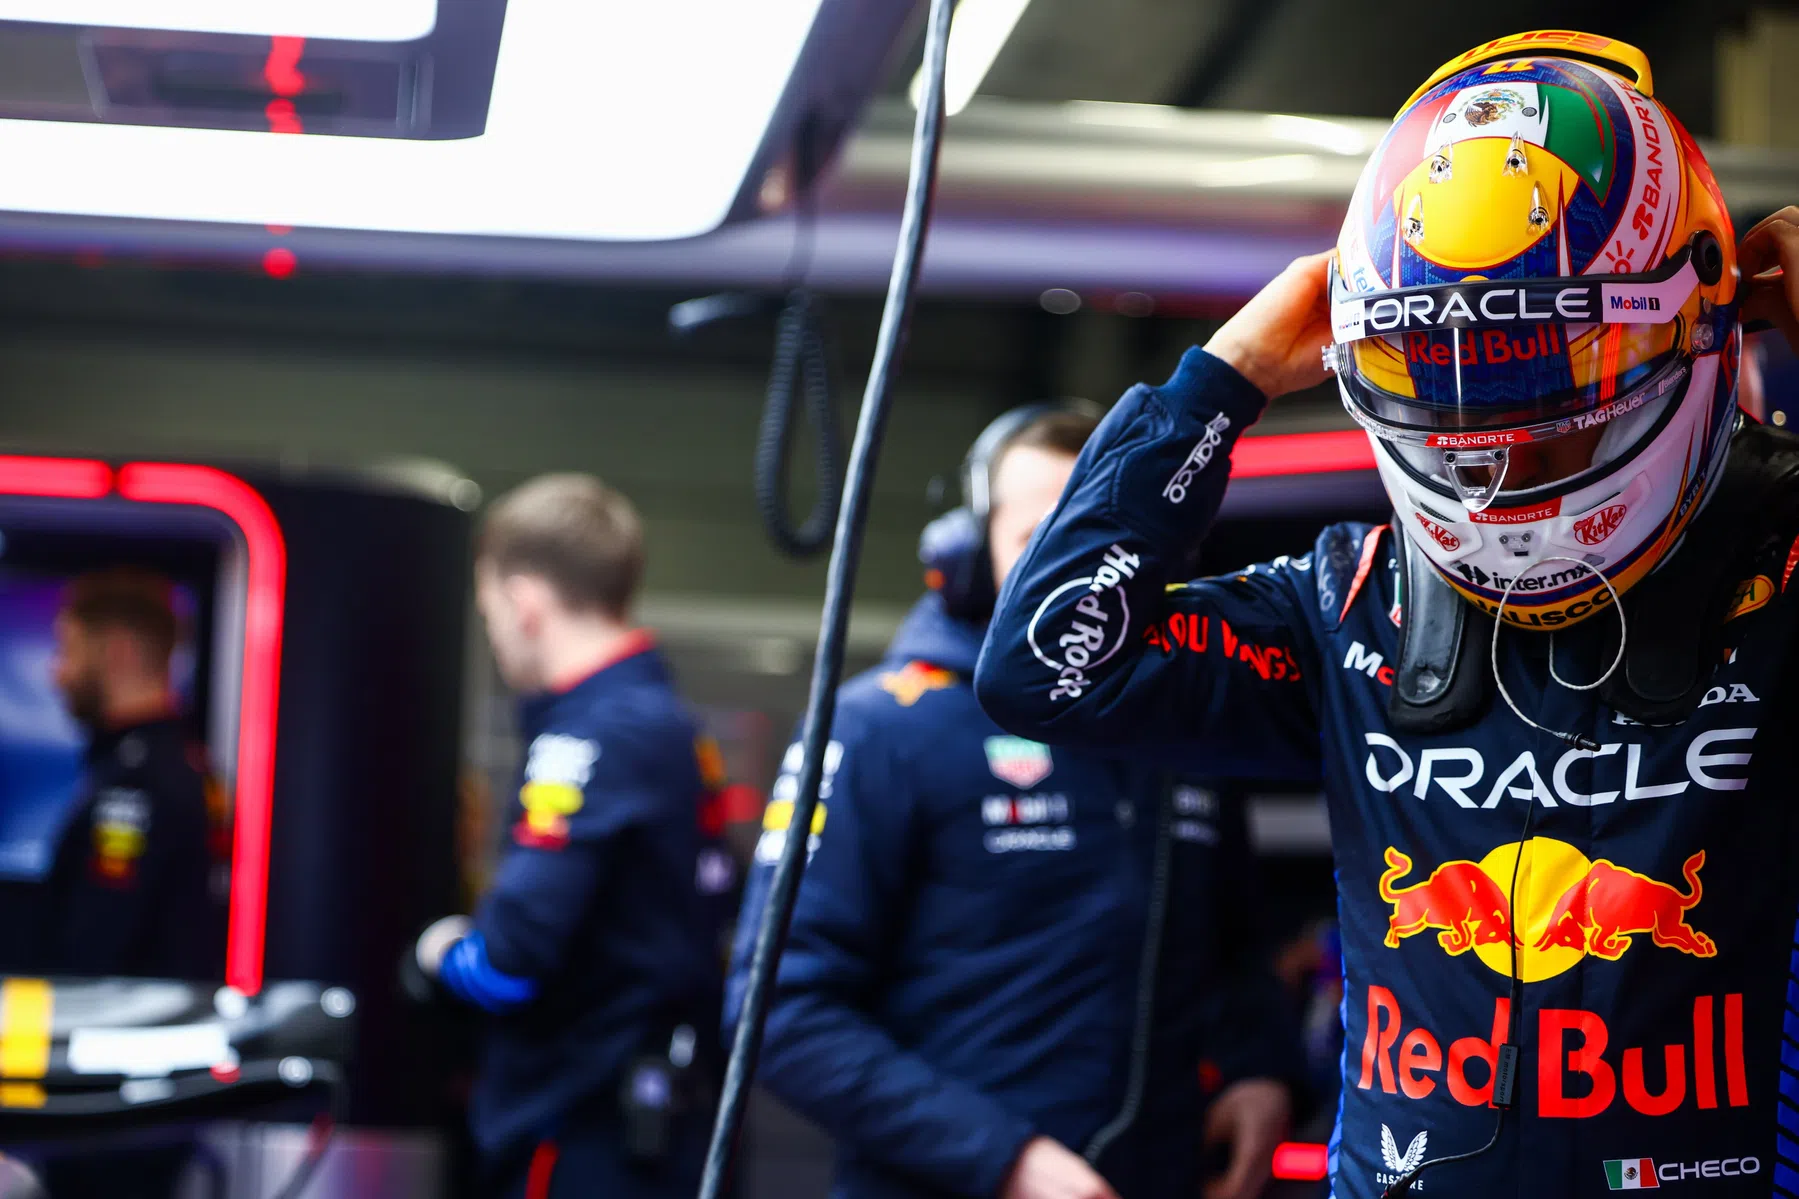 Los Power Rankings señalan a Verstappen en séptima posición tras el GP de Mónaco